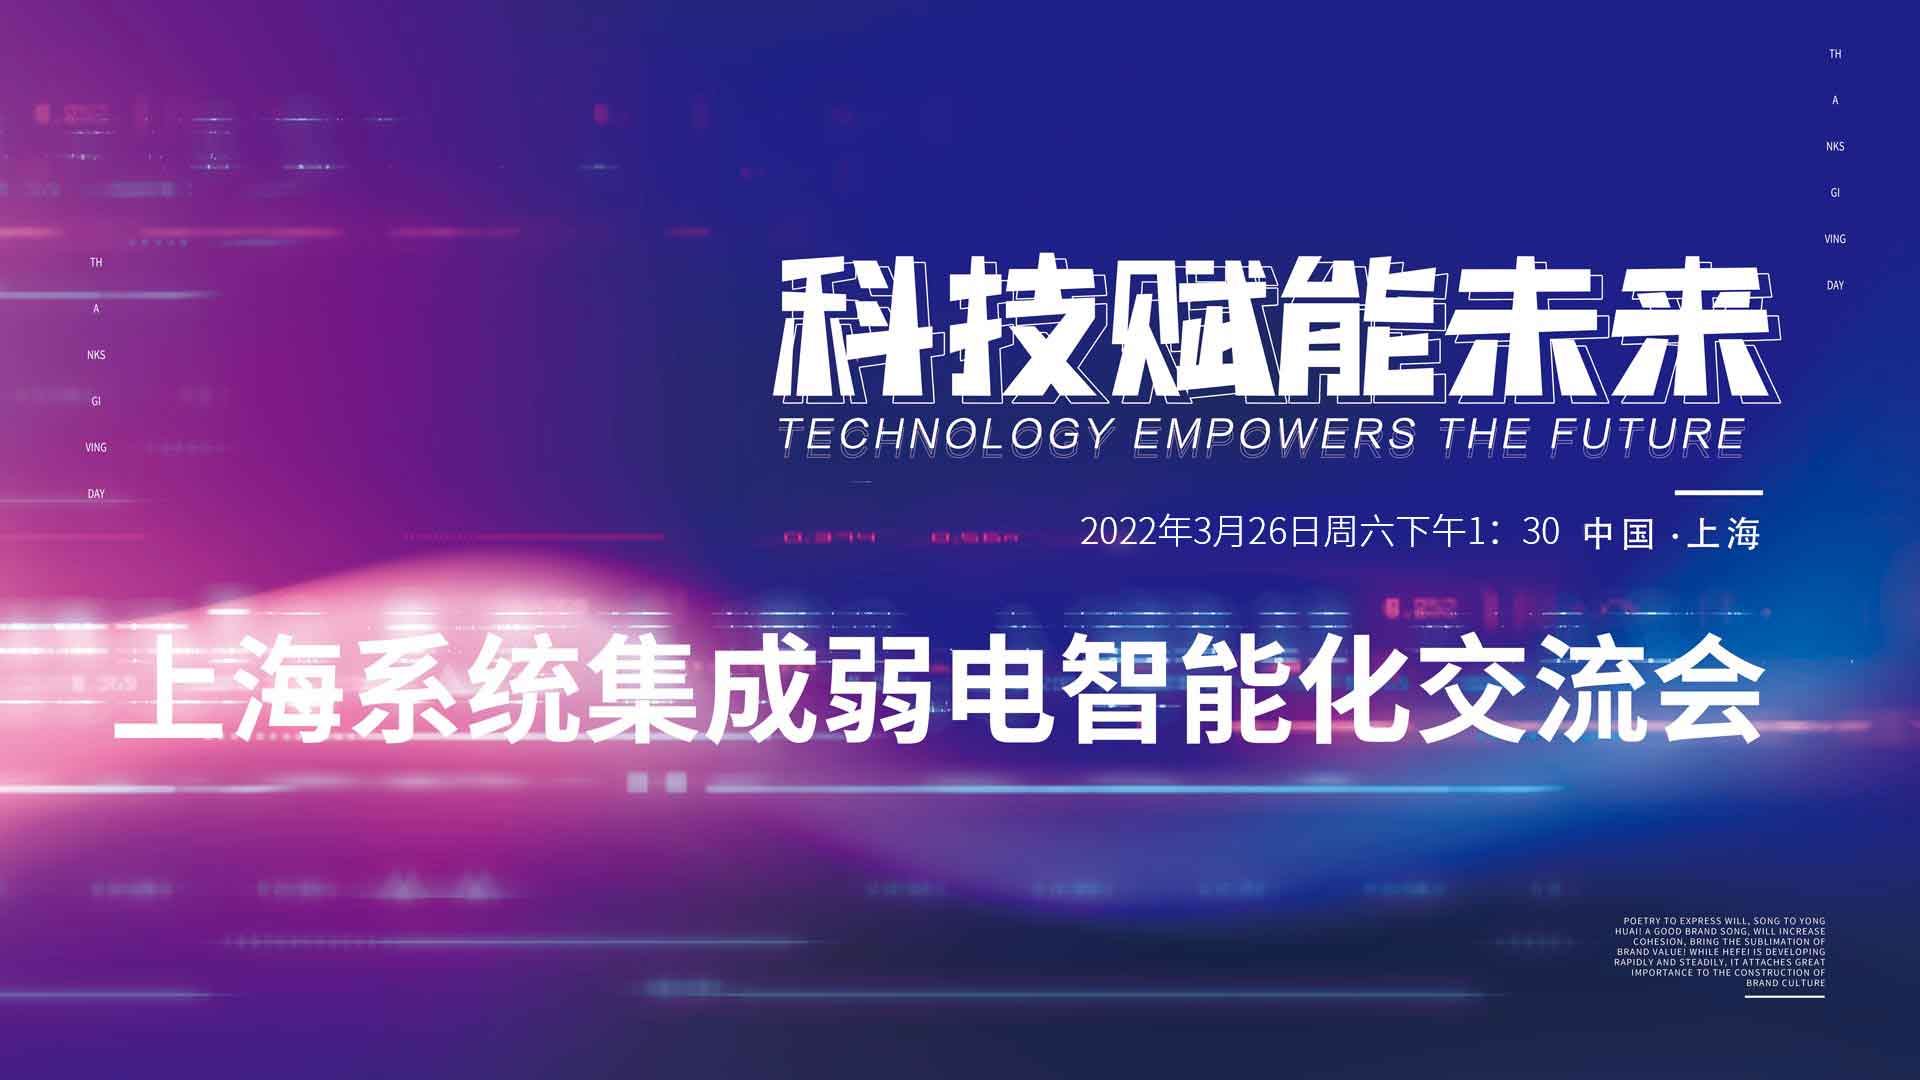 3.26上海系统集成弱电智能化交流会